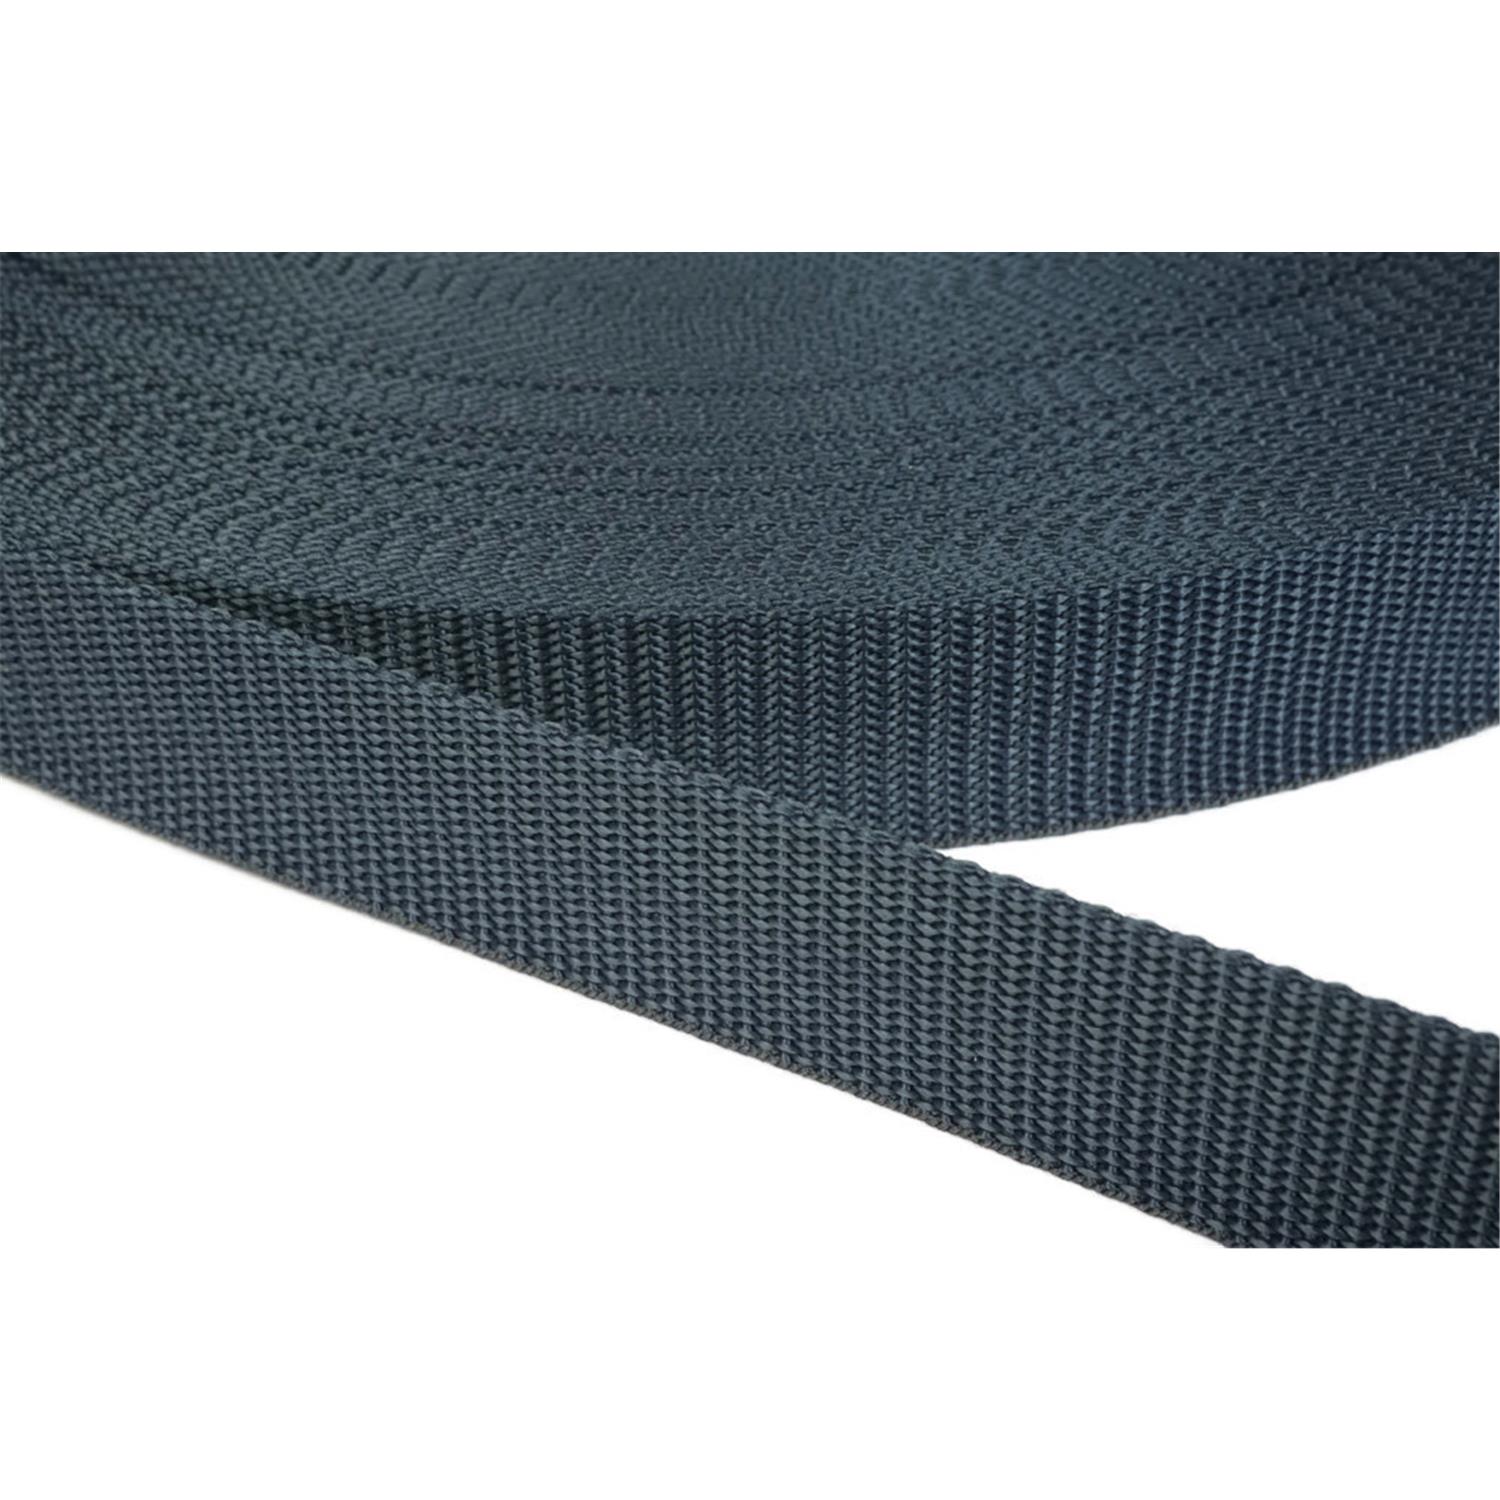 Gurtband 50mm breit aus Polypropylen in 41 Farben 40 - dunkelgrau/blau 12 Meter